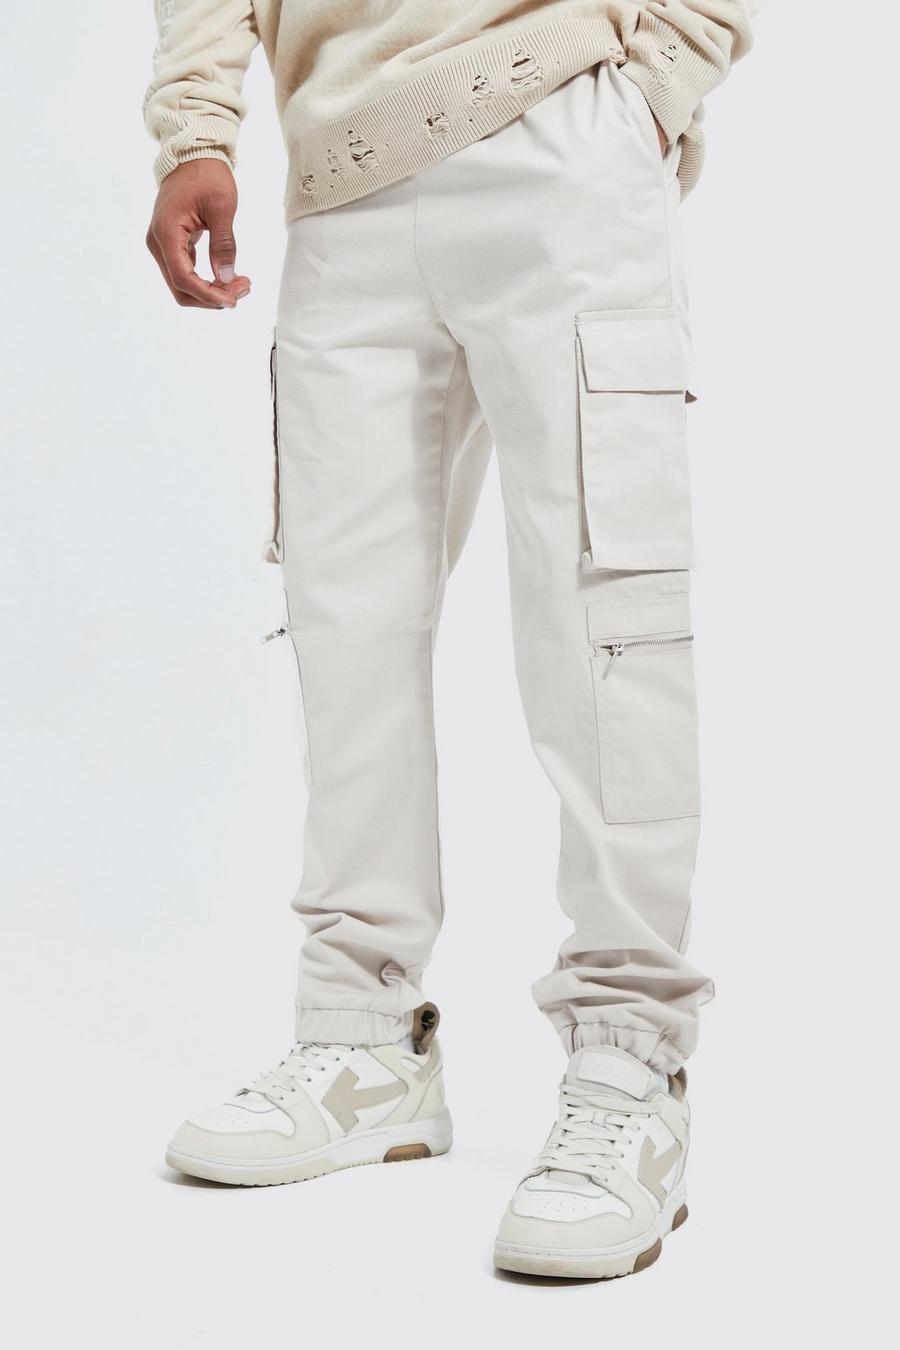 Pantaloni Cargo con vita elasticizzata, tasche multiple e zip, Ecru bianco